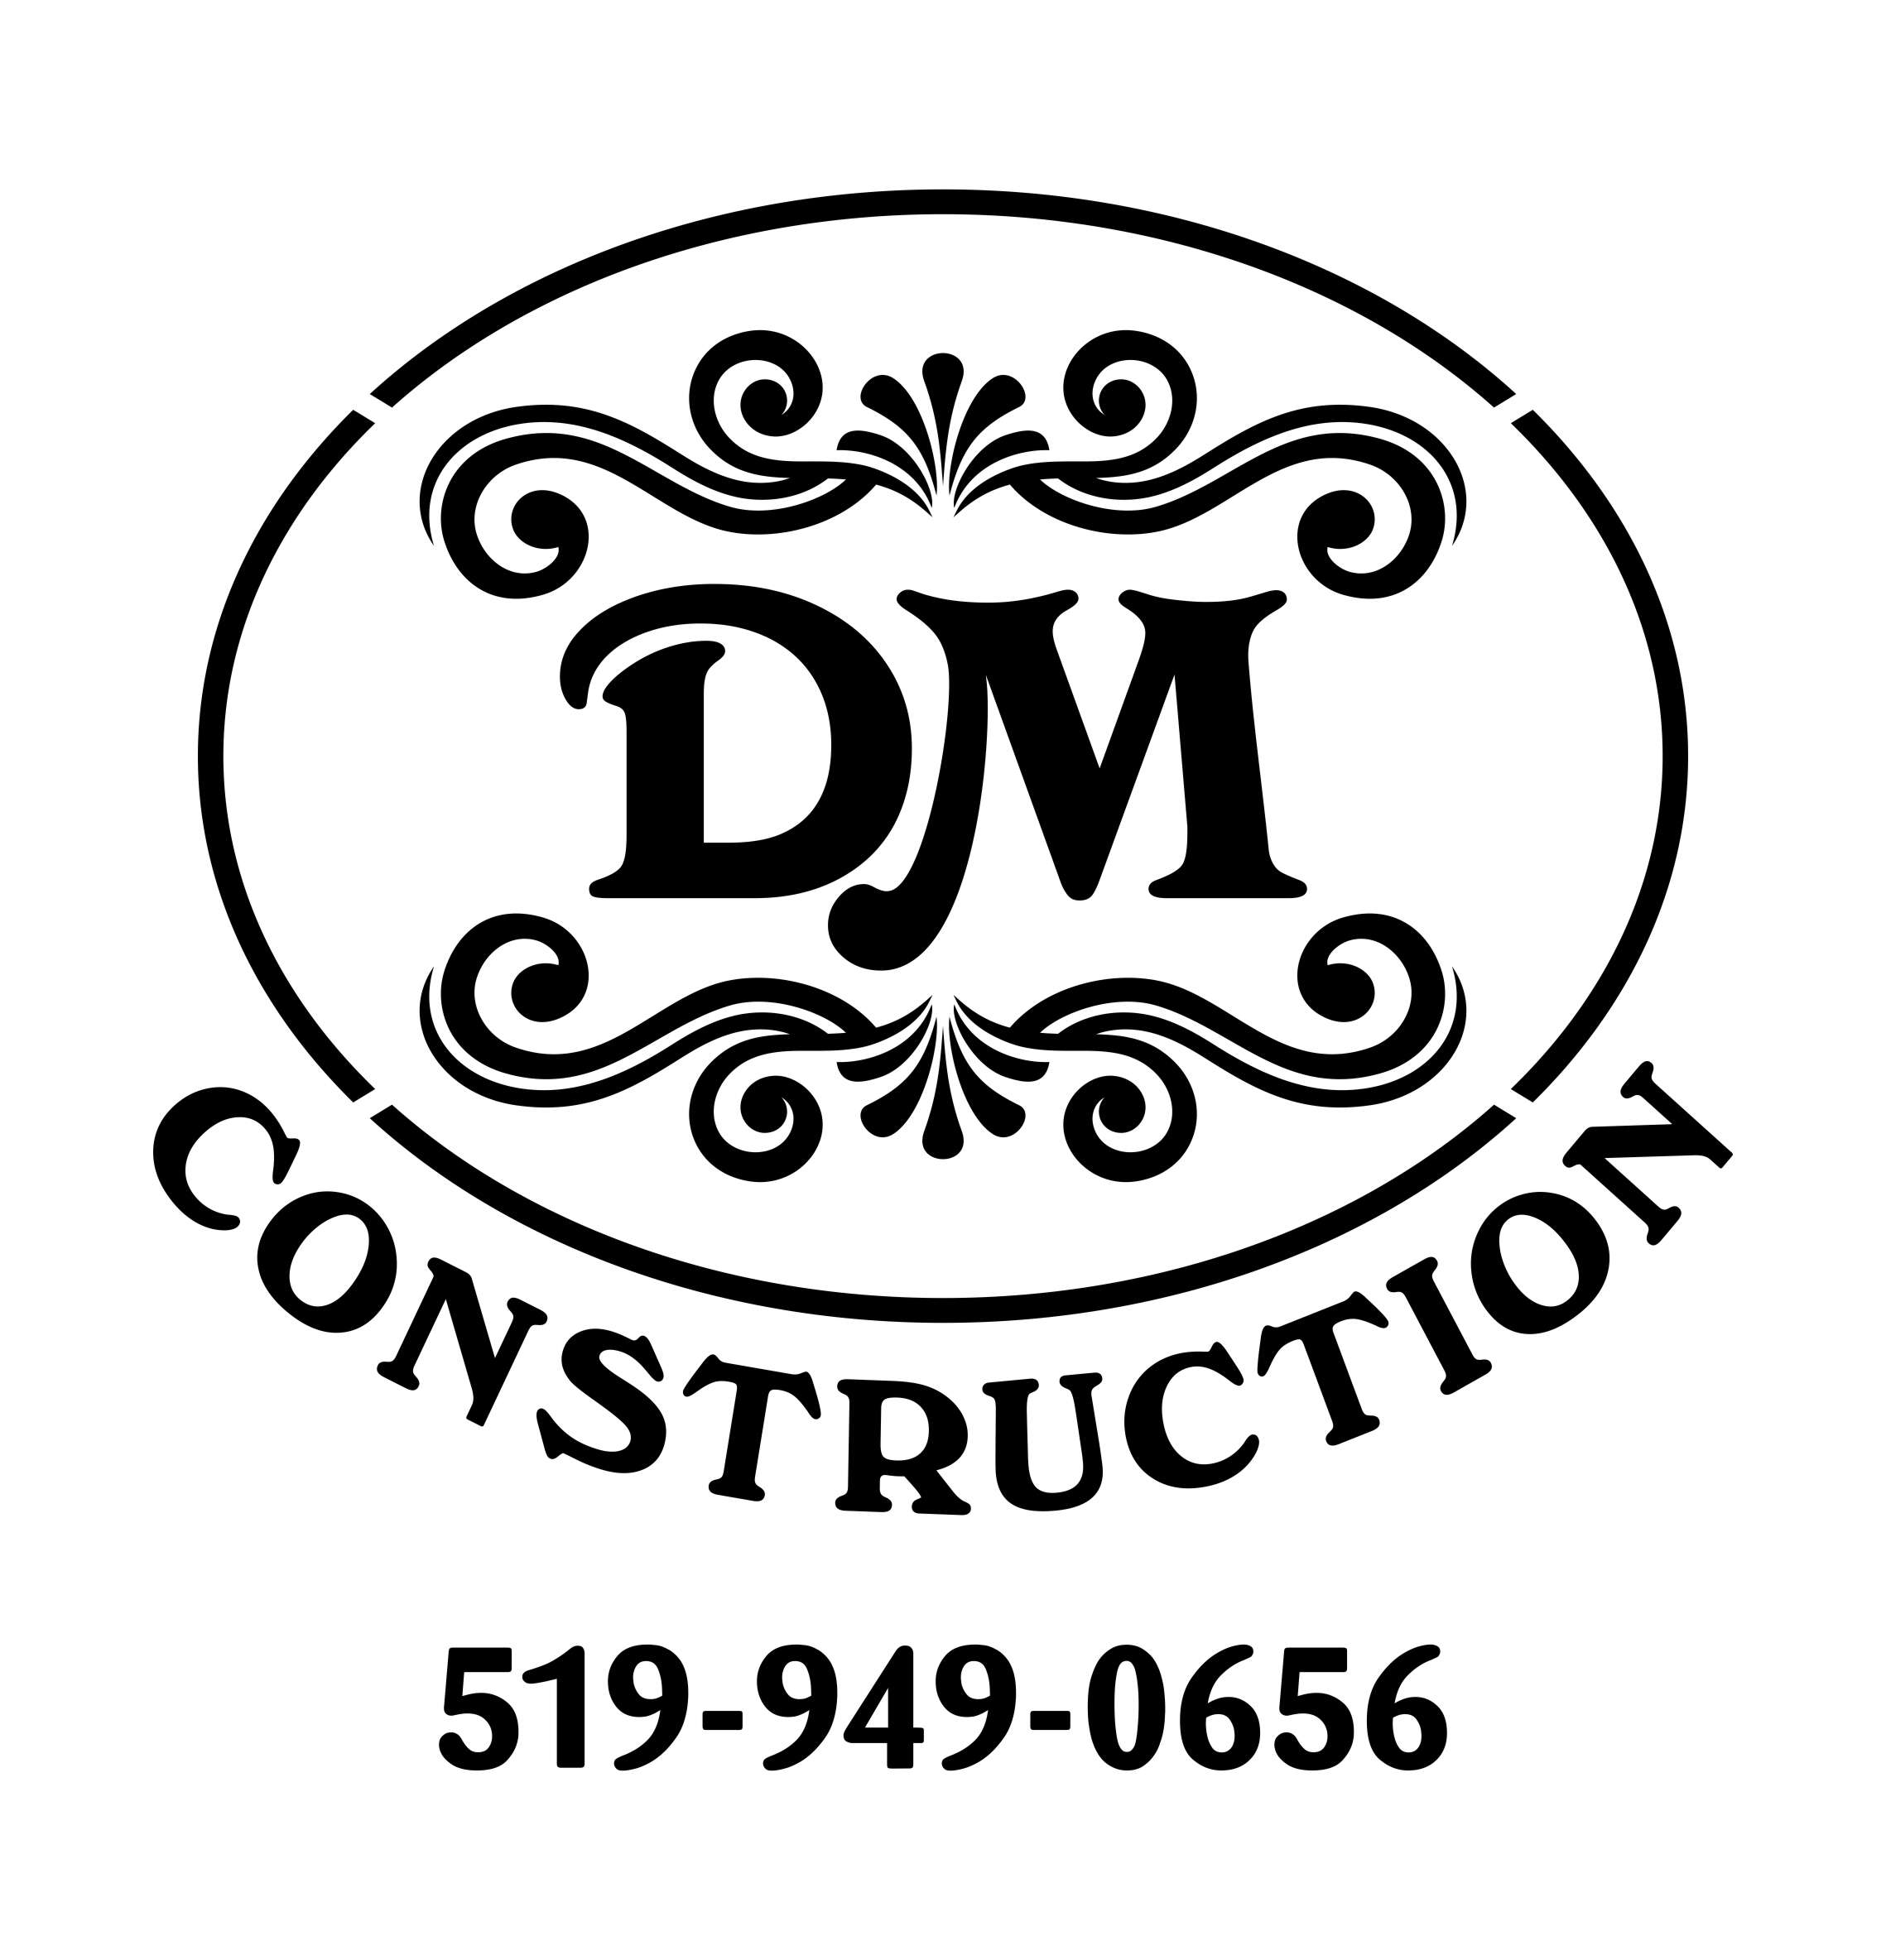 Dan Medd Construction